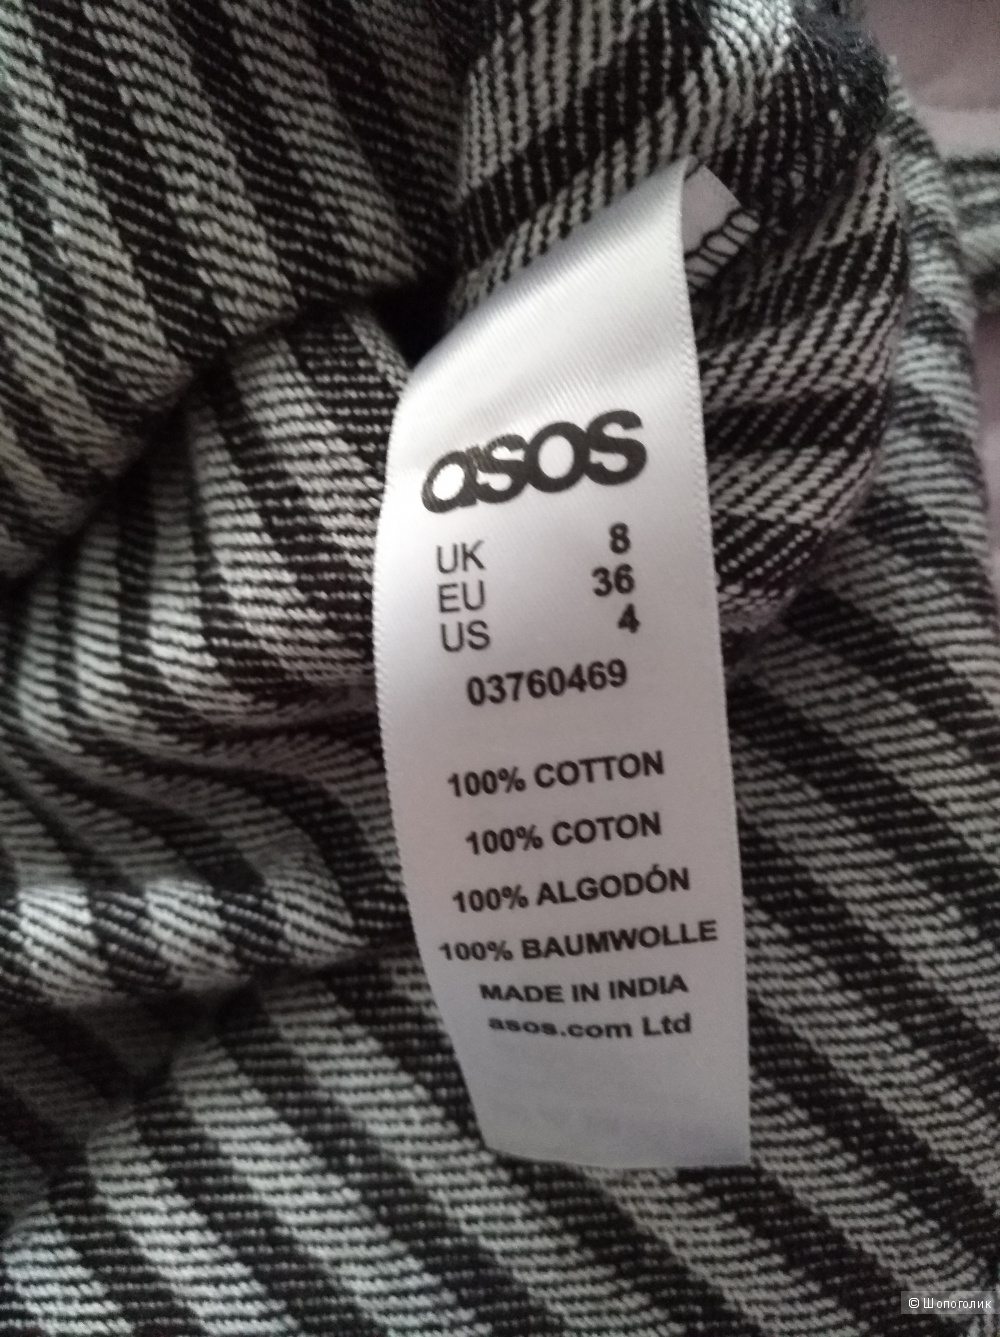 ASOS V Neck Belted T-Shirt in Stripe, 8 UK